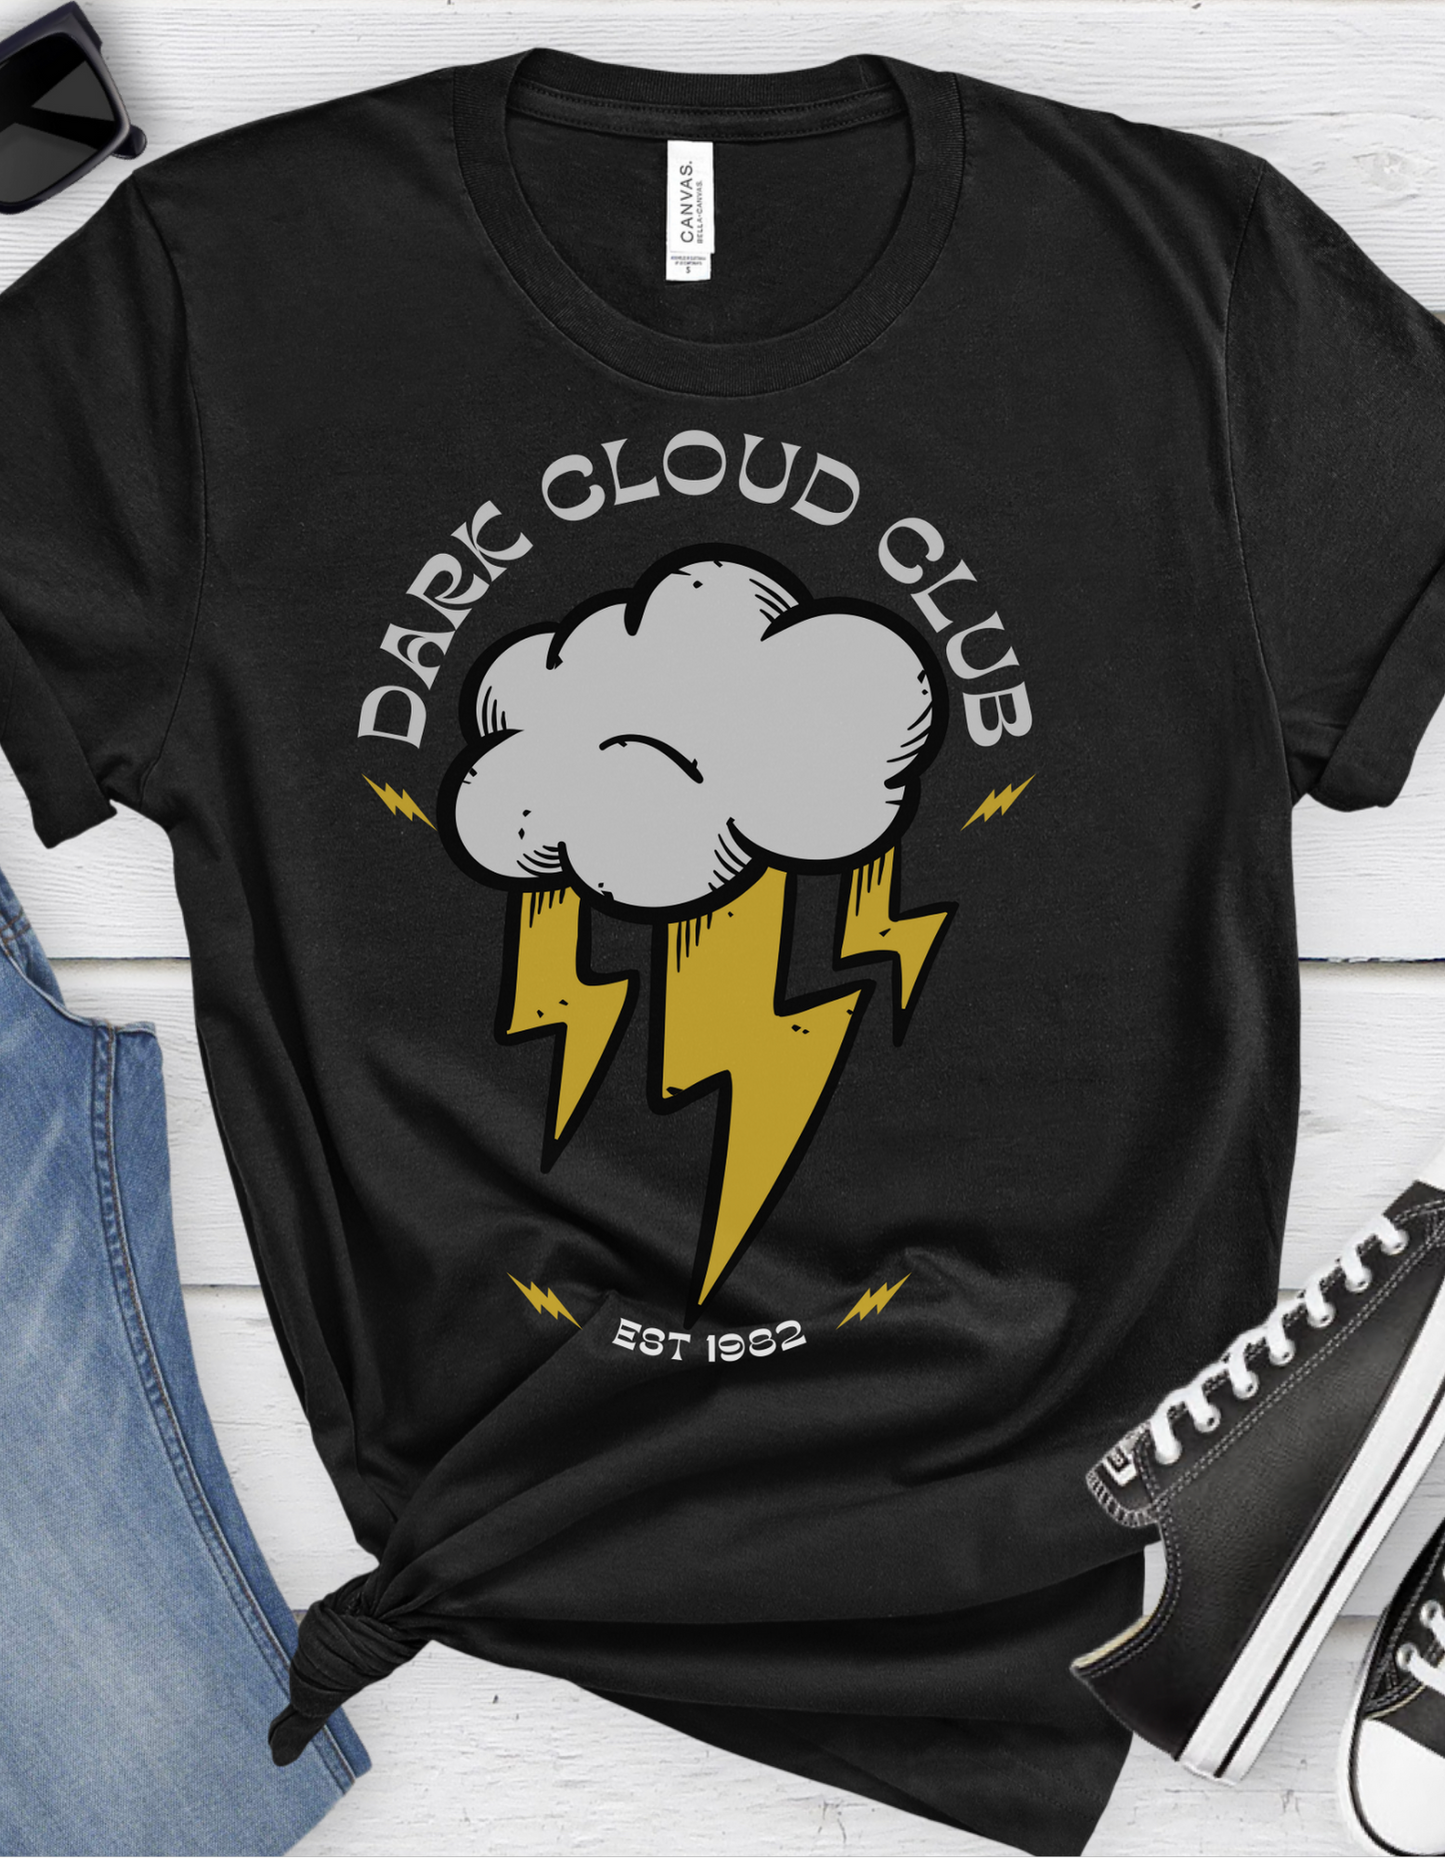 Dark Cloud Club Tattoo T-shirt / Traditional Tattoo Tee Shirt / Punk Rock Clothing Tshirt Rockabilly Psychobilly Freak Goth - Foxlark Crystal Jewelry